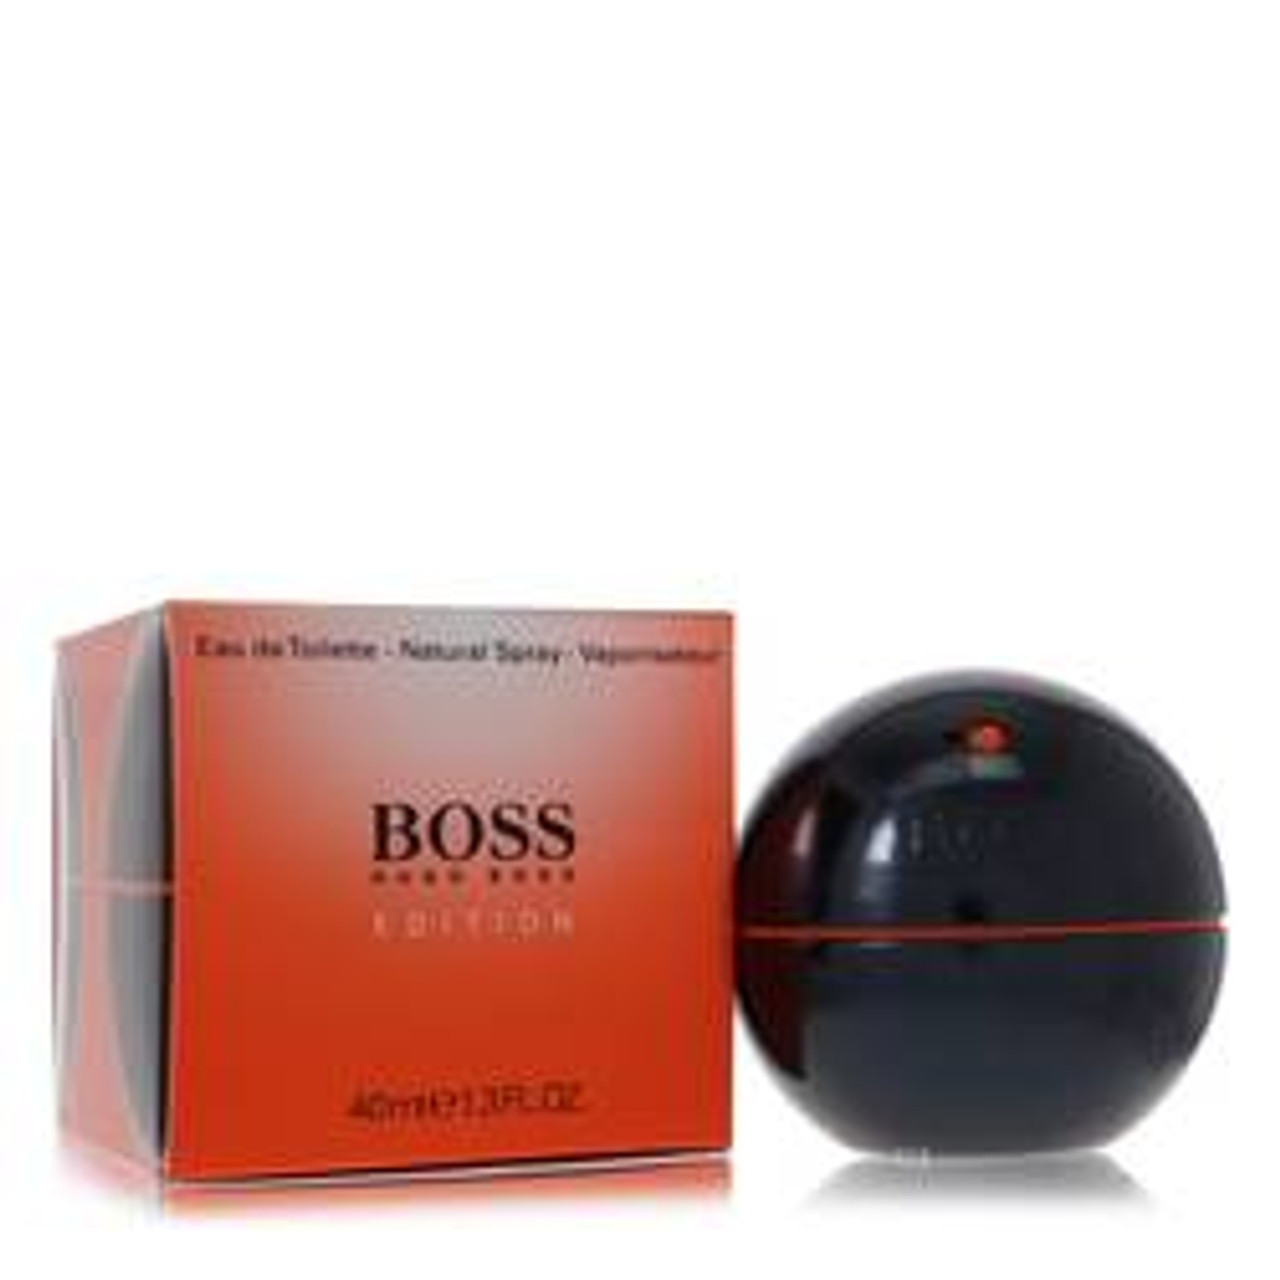 Boss In Motion Black Cologne By Hugo Boss Eau De Toilette Spray 1.3 oz for Men - *Pre-Order